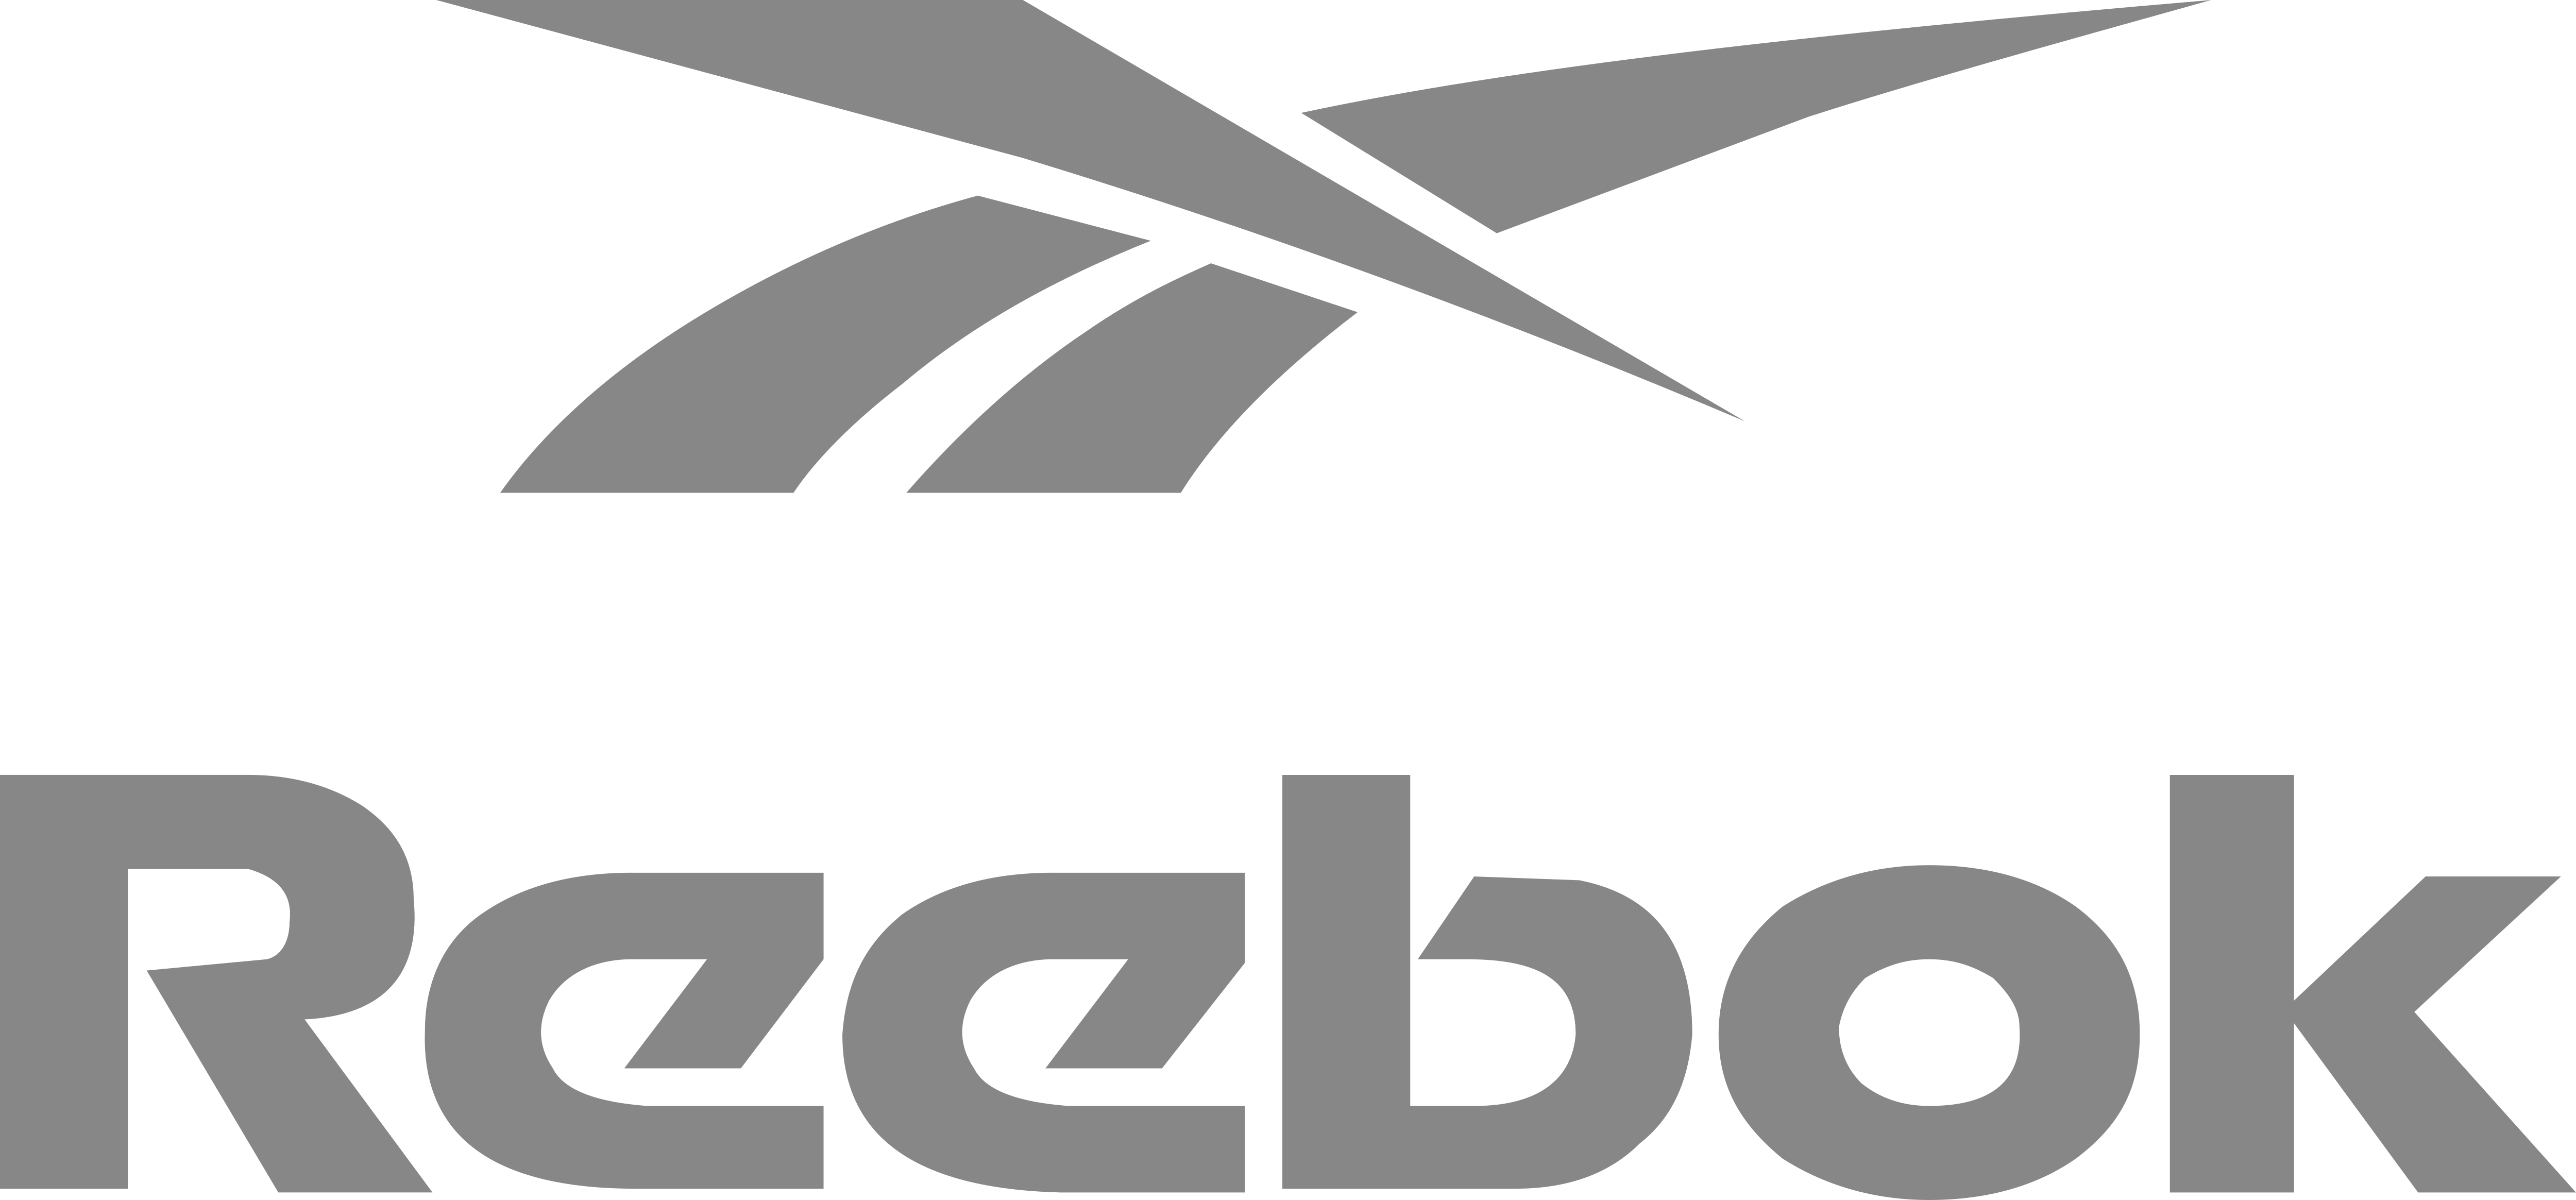 Reebok – Logos